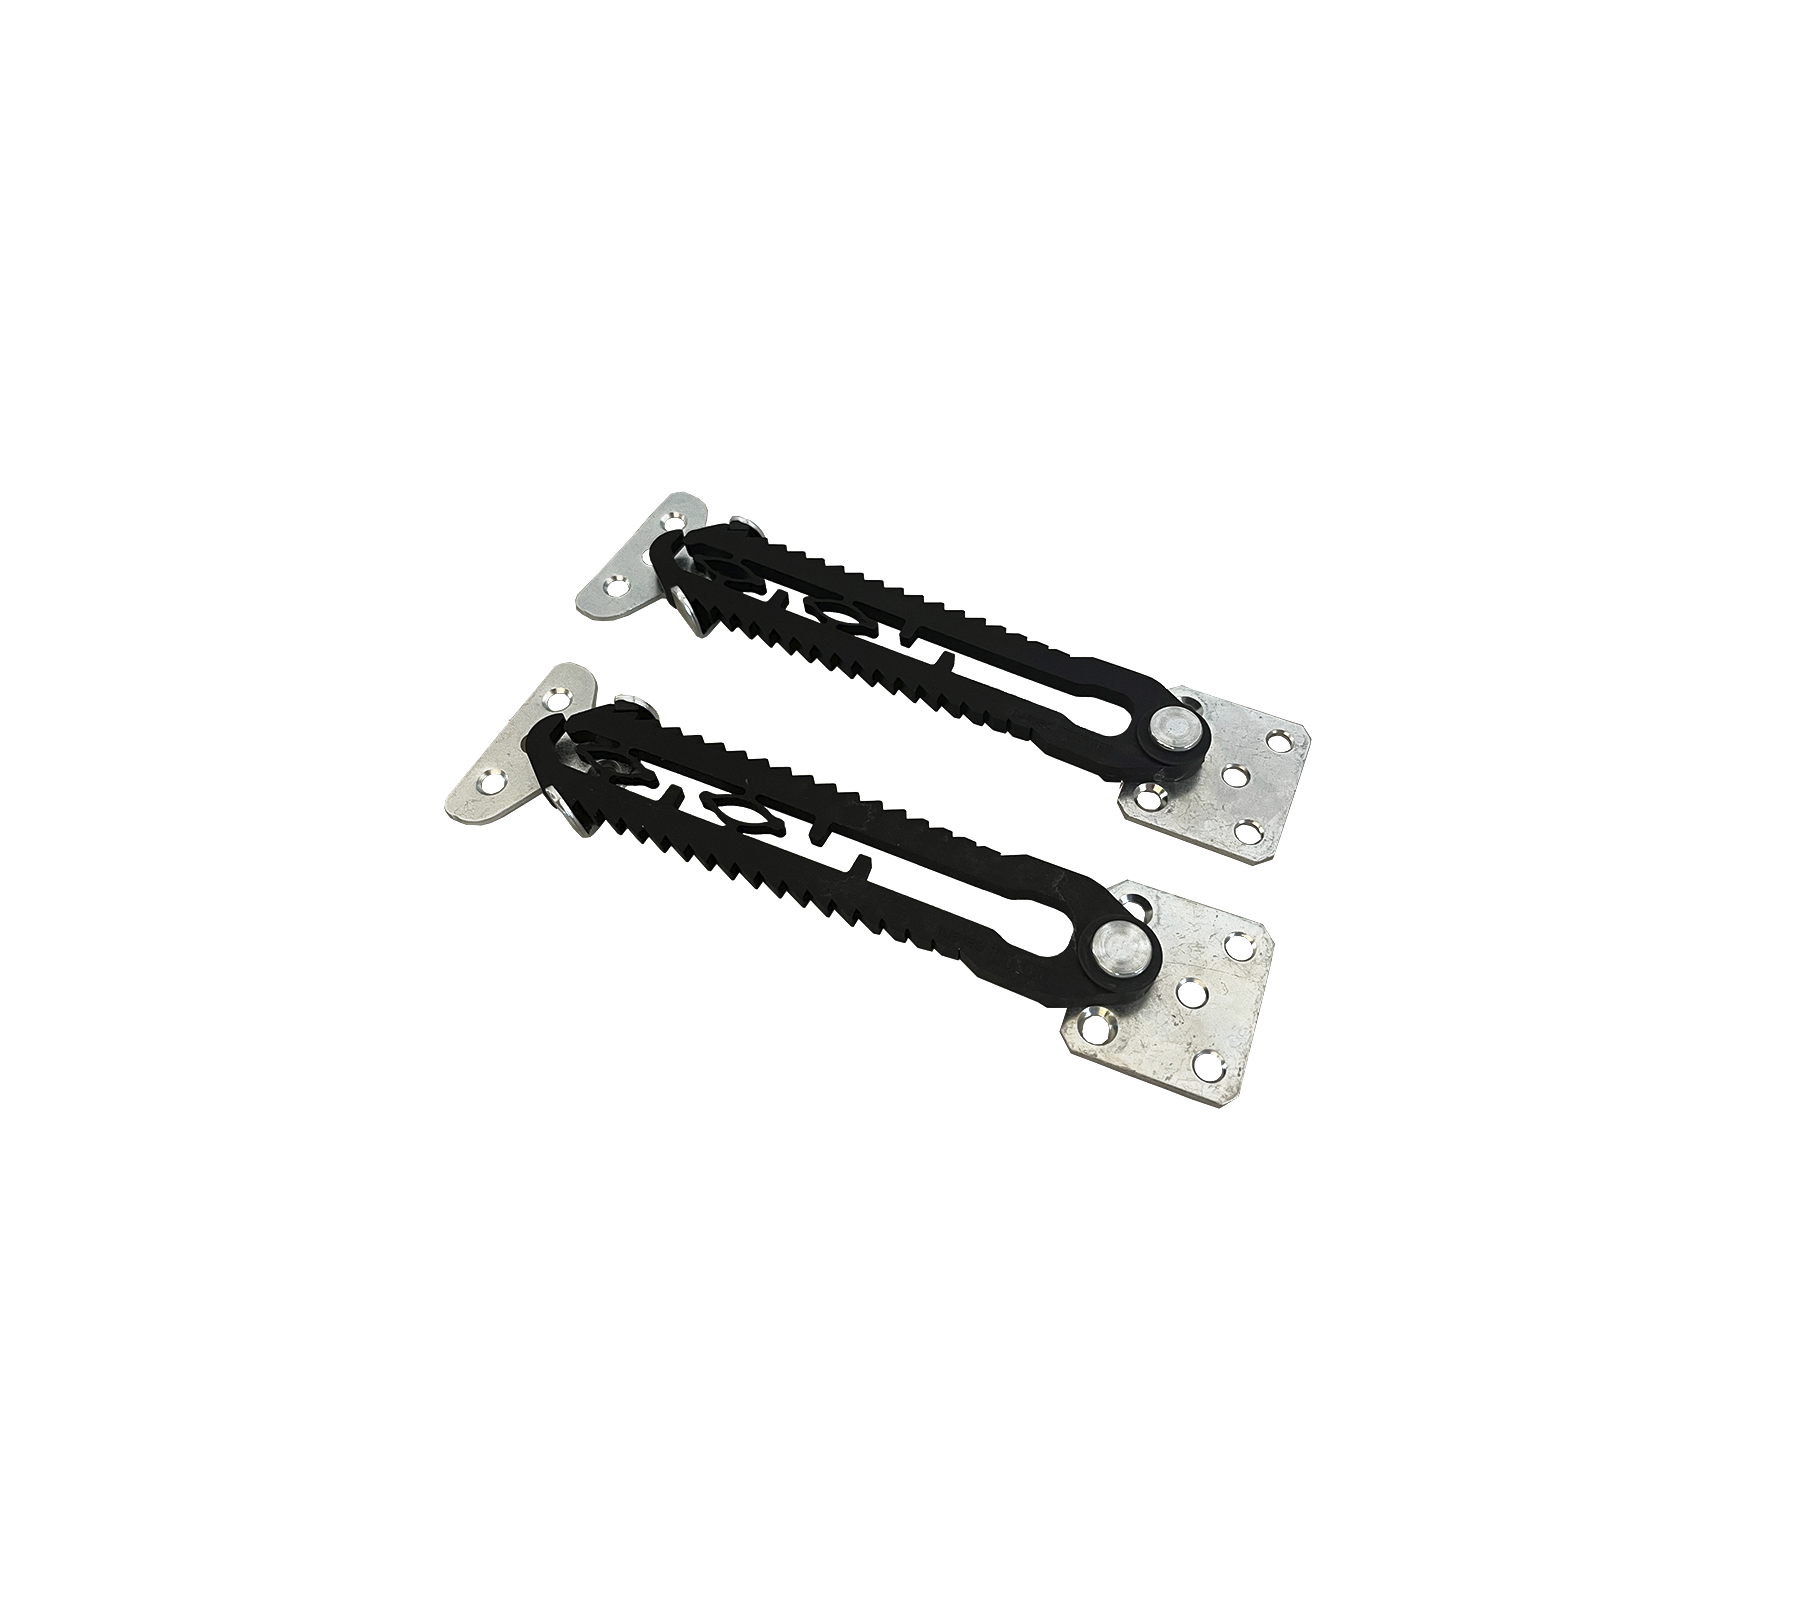 Aura connection brackets, galvanized steel w/plastic